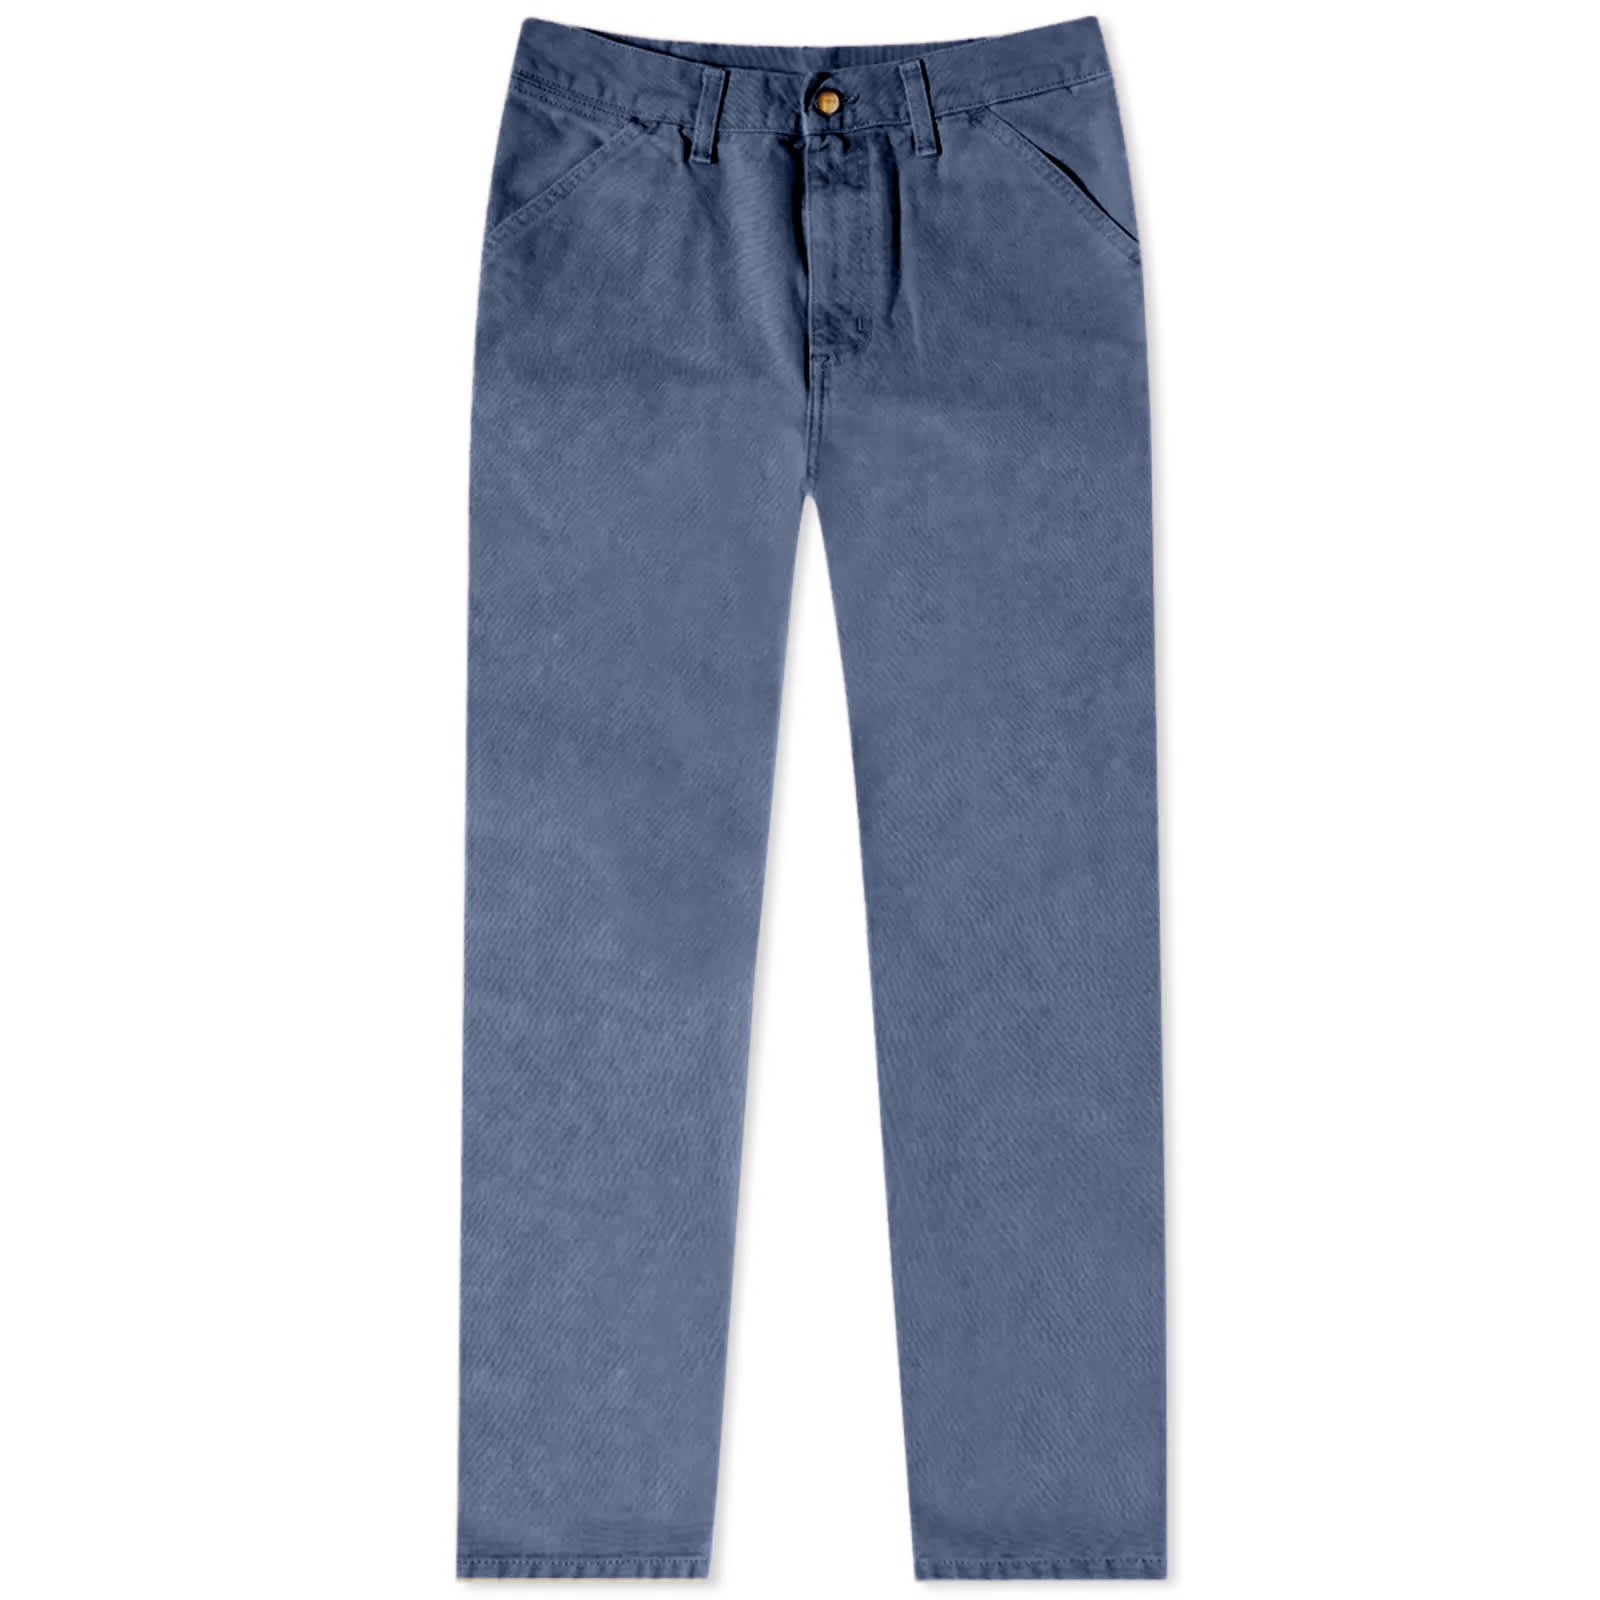 Carhartt WIP – Landon Pant Stonewashed Blue